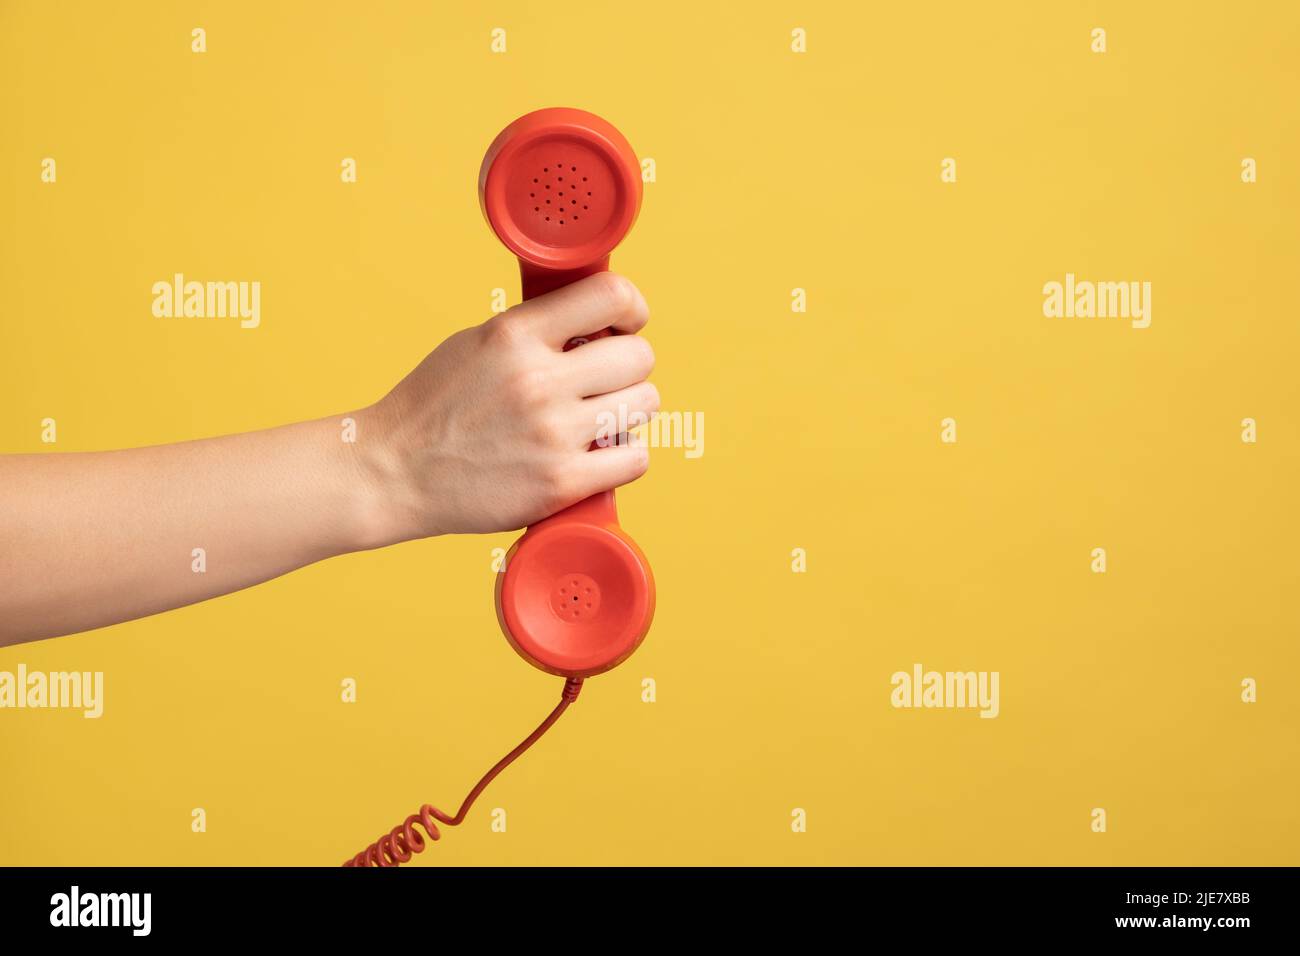 Vue latérale du profil vue rapprochée de la main de la femme et montrant le combiné téléphonique rouge, le centre d'appels. Studio d'intérieur isolé sur fond jaune. Banque D'Images